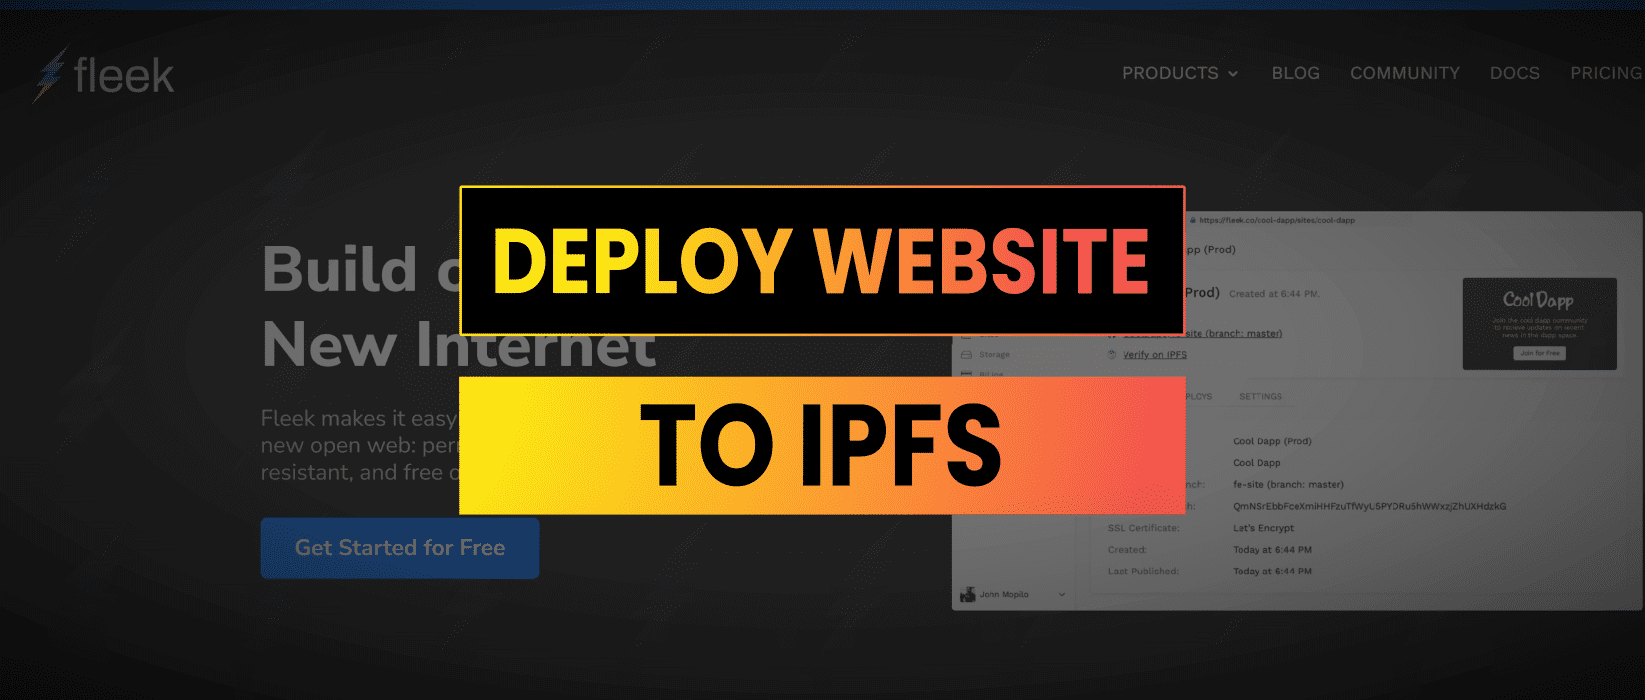 Fleek IPFS Tutorial